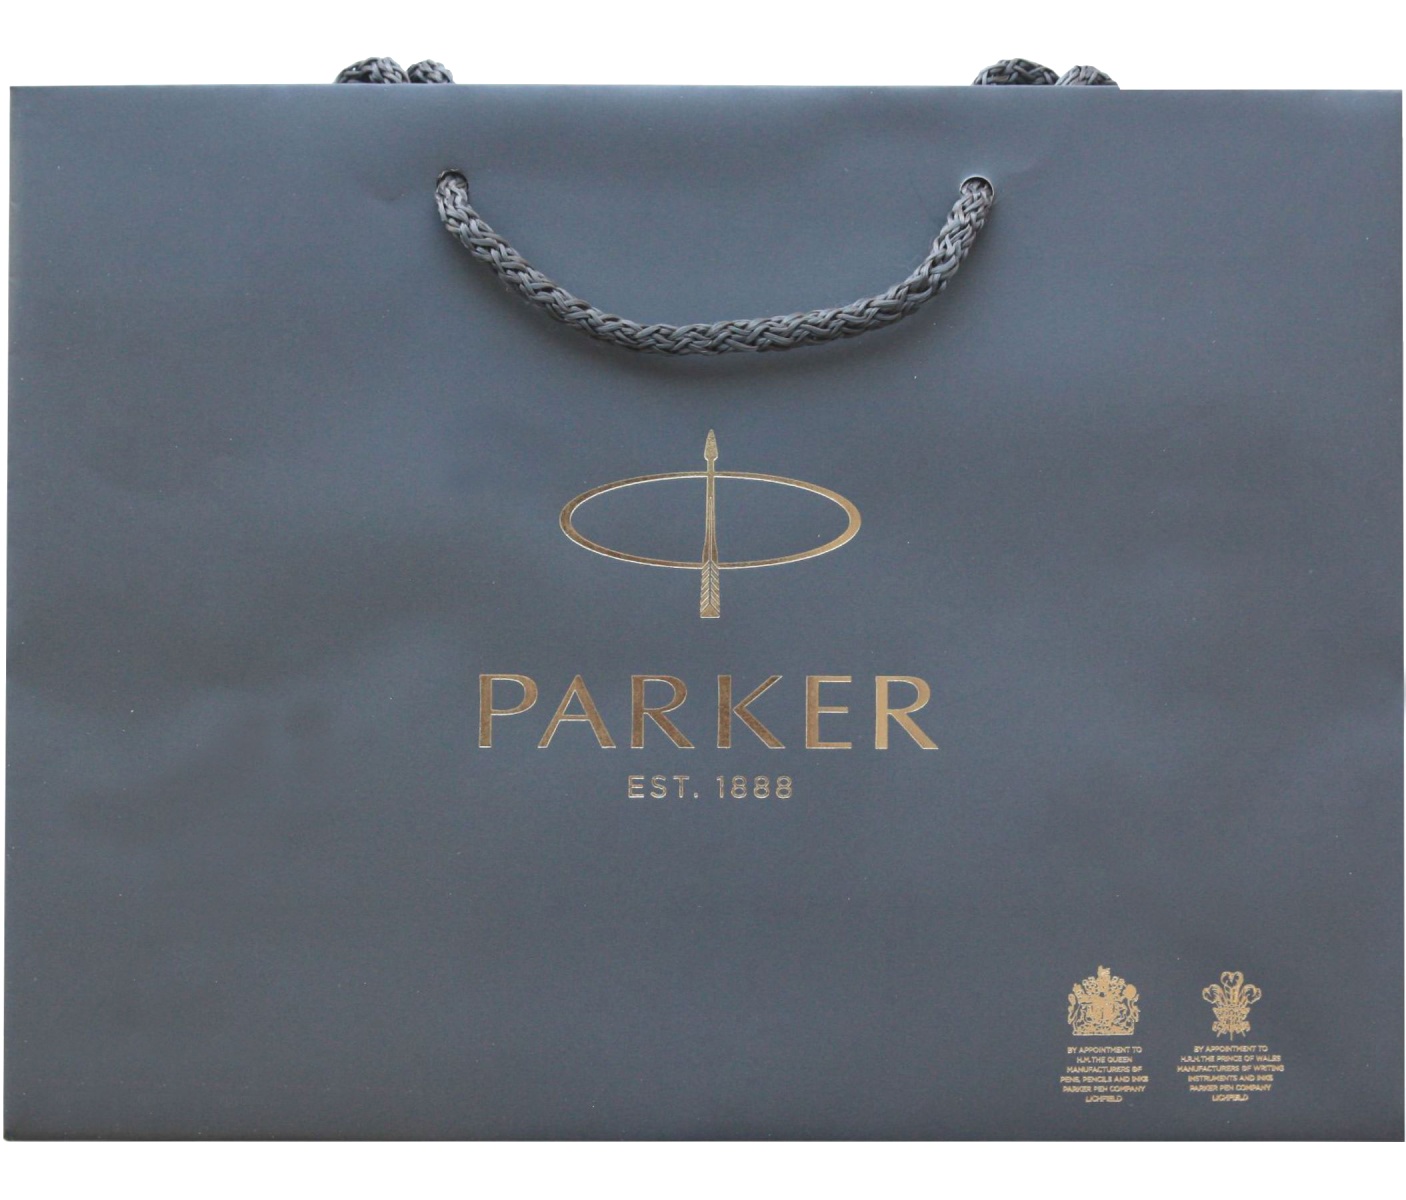  Фирменный подарочный пакет PARKER, Большой, бумажный, серый, 30*21*10 см., фото 3